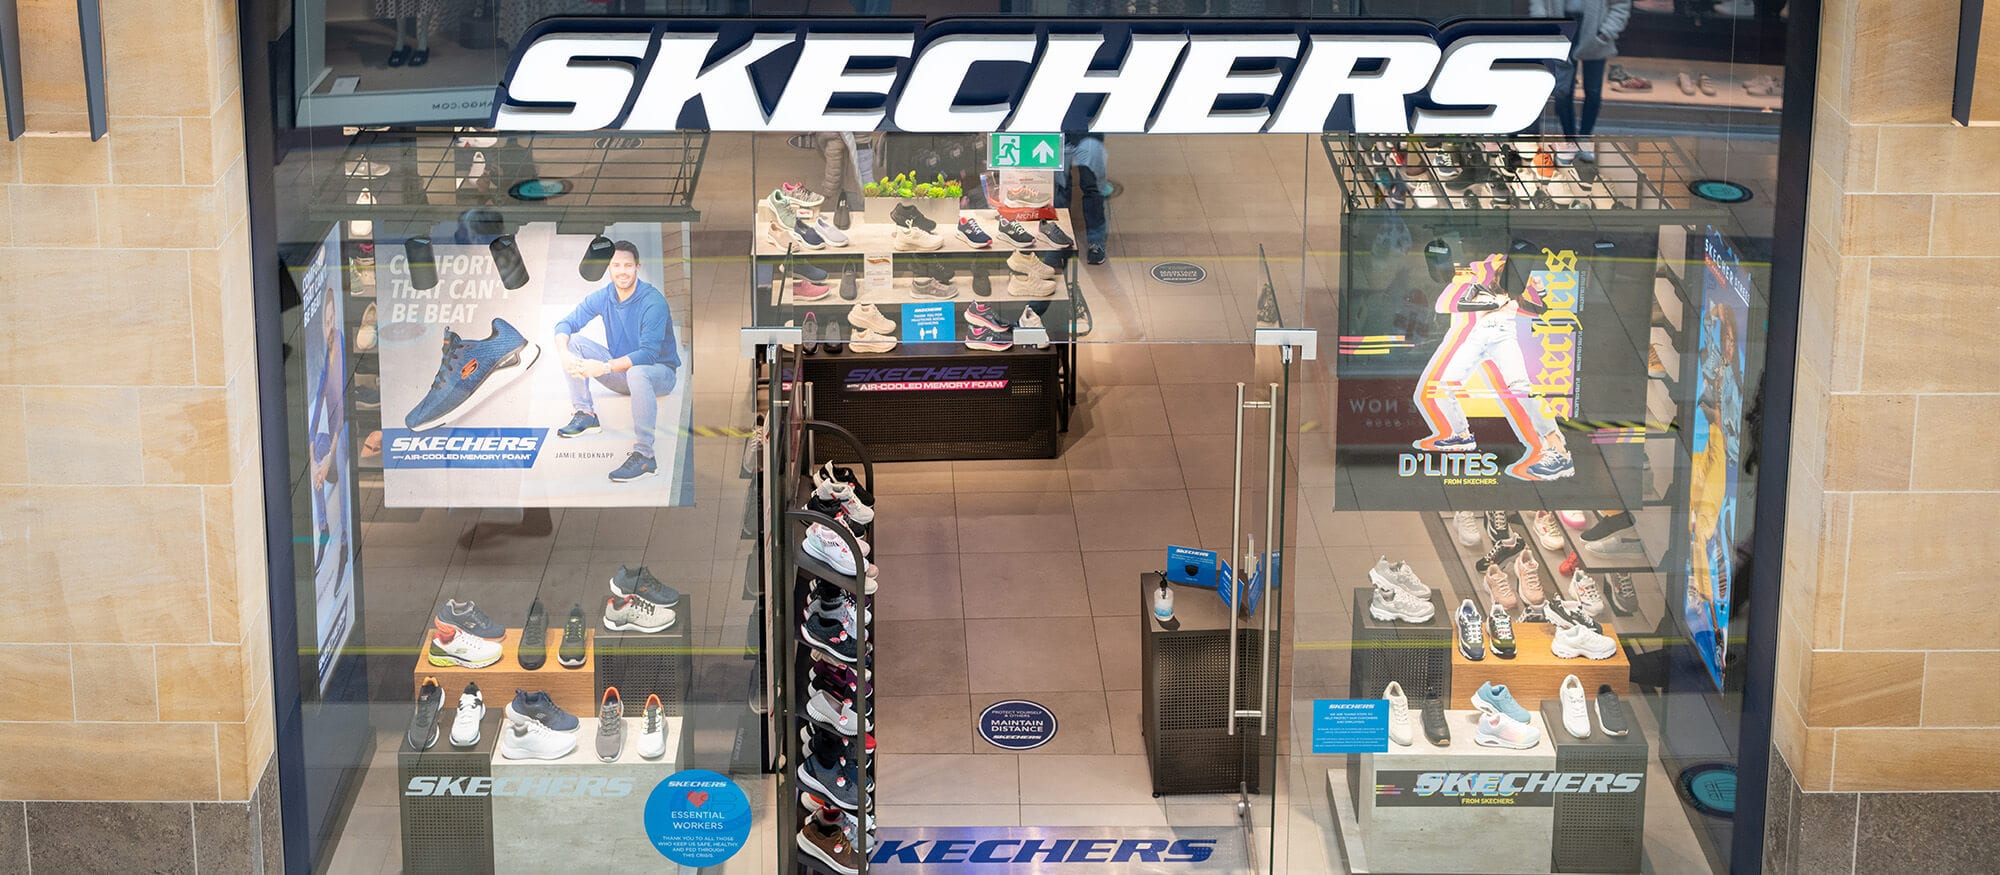 Skechers - Arcade